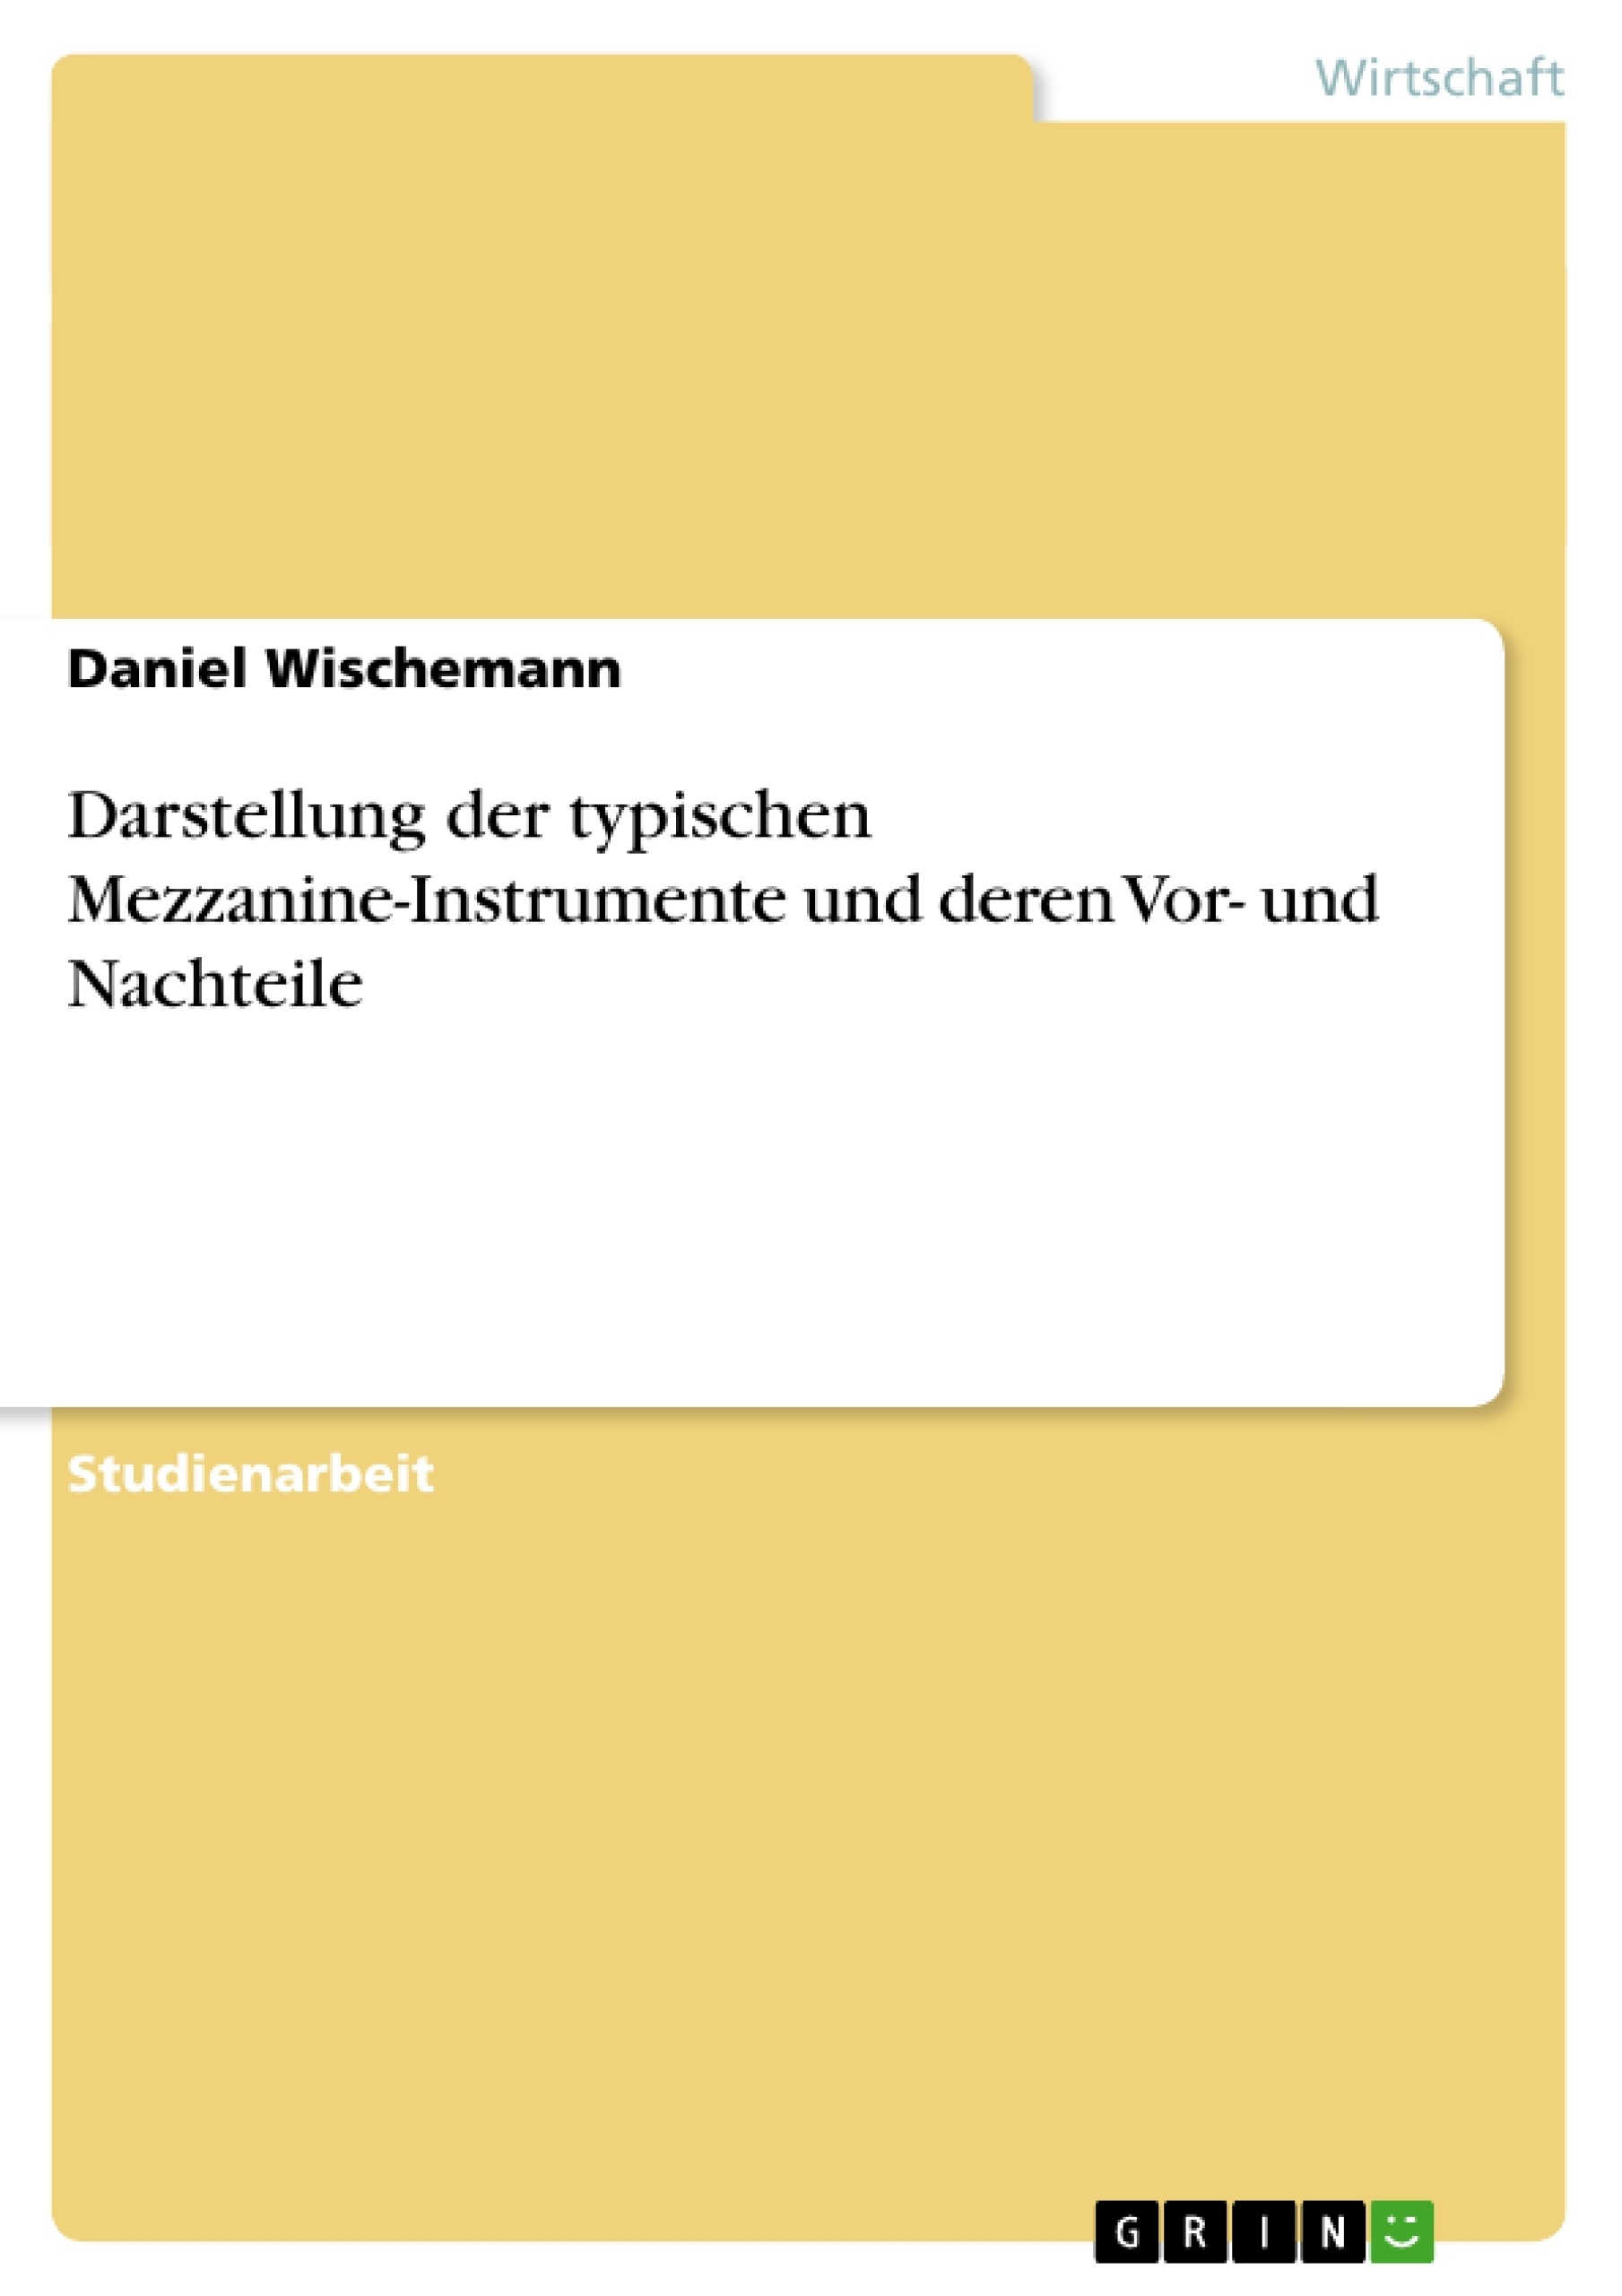 Title: Darstellung der typischen Mezzanine-Instrumente und deren Vor- und Nachteile